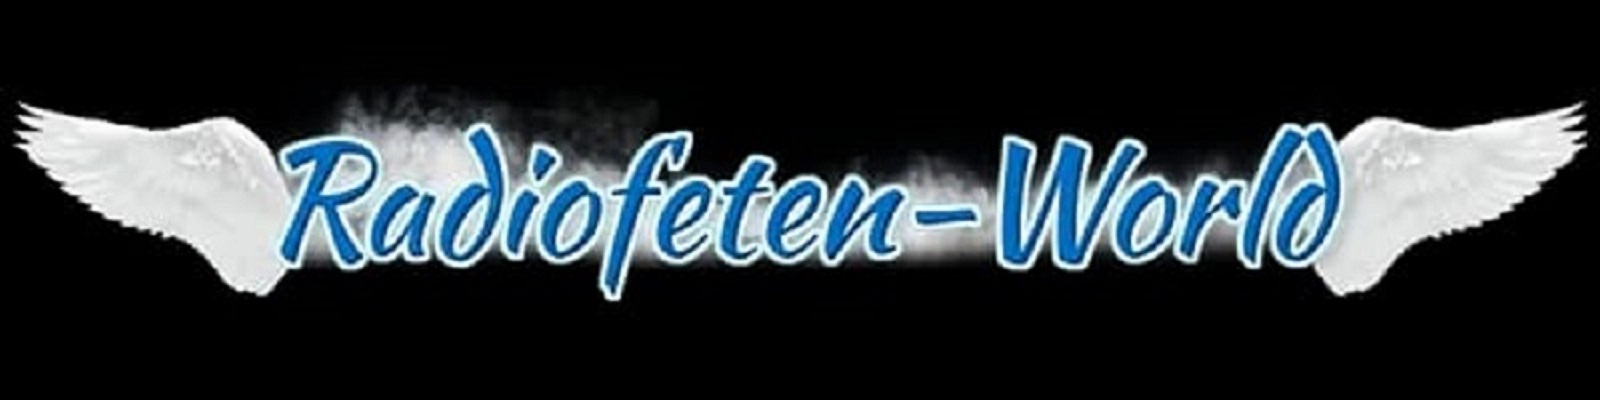 Radio Feten World Sender-Logo